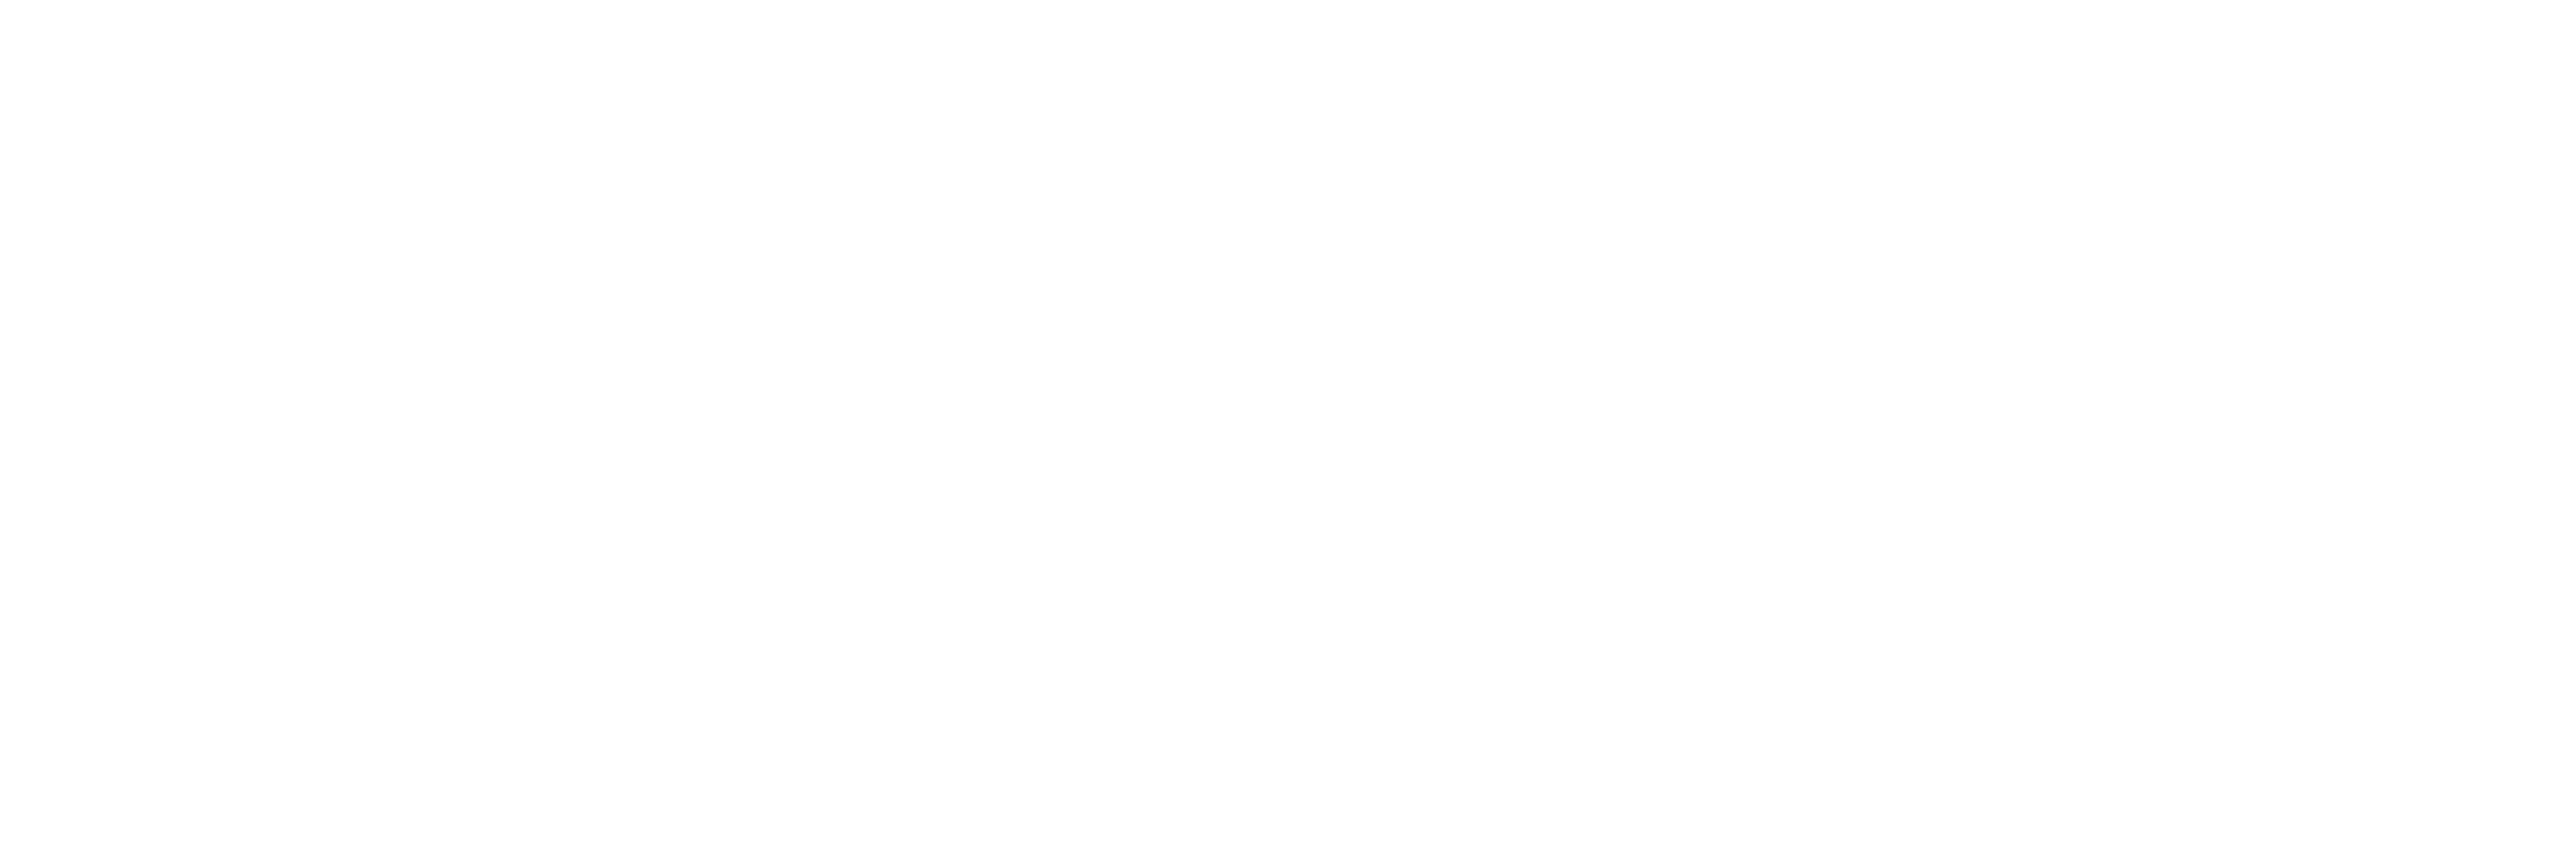 LOG Plus-Małopolski Ośrodek Ruchu Drogowego w Krakowie